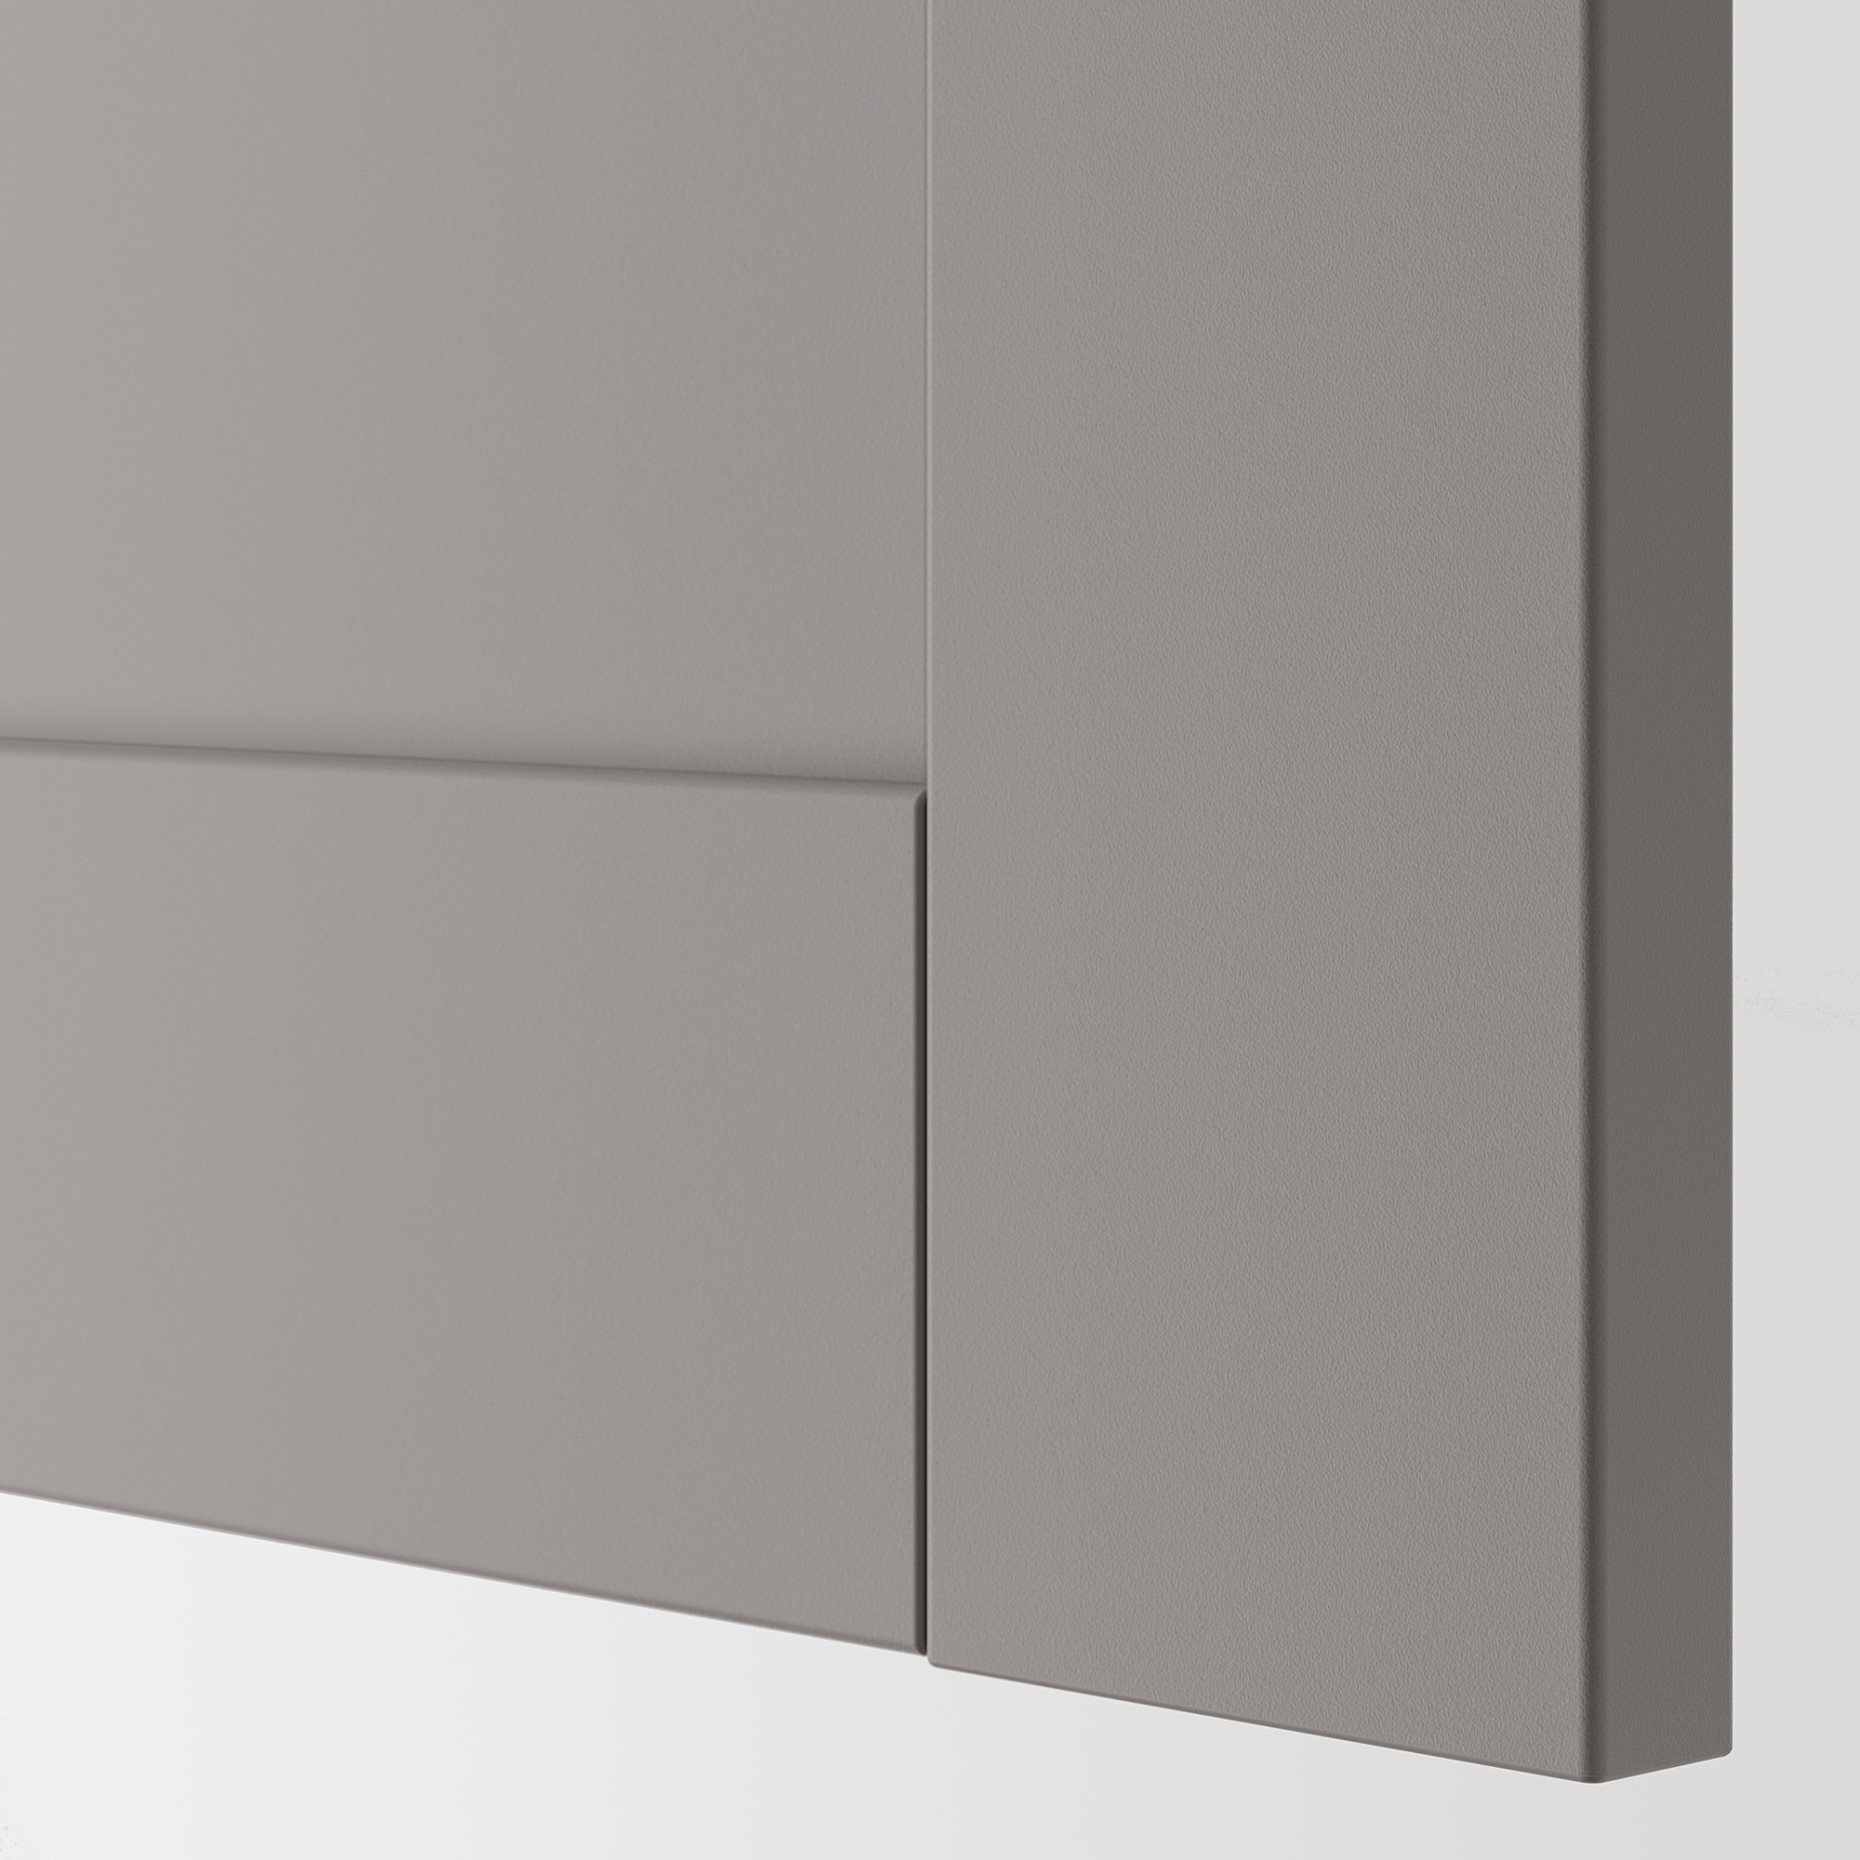 ENHET/TVALLEN, ντουλάπι νιπτήρα με 1 πόρτα, 44x43x65 cm, 794.800.25